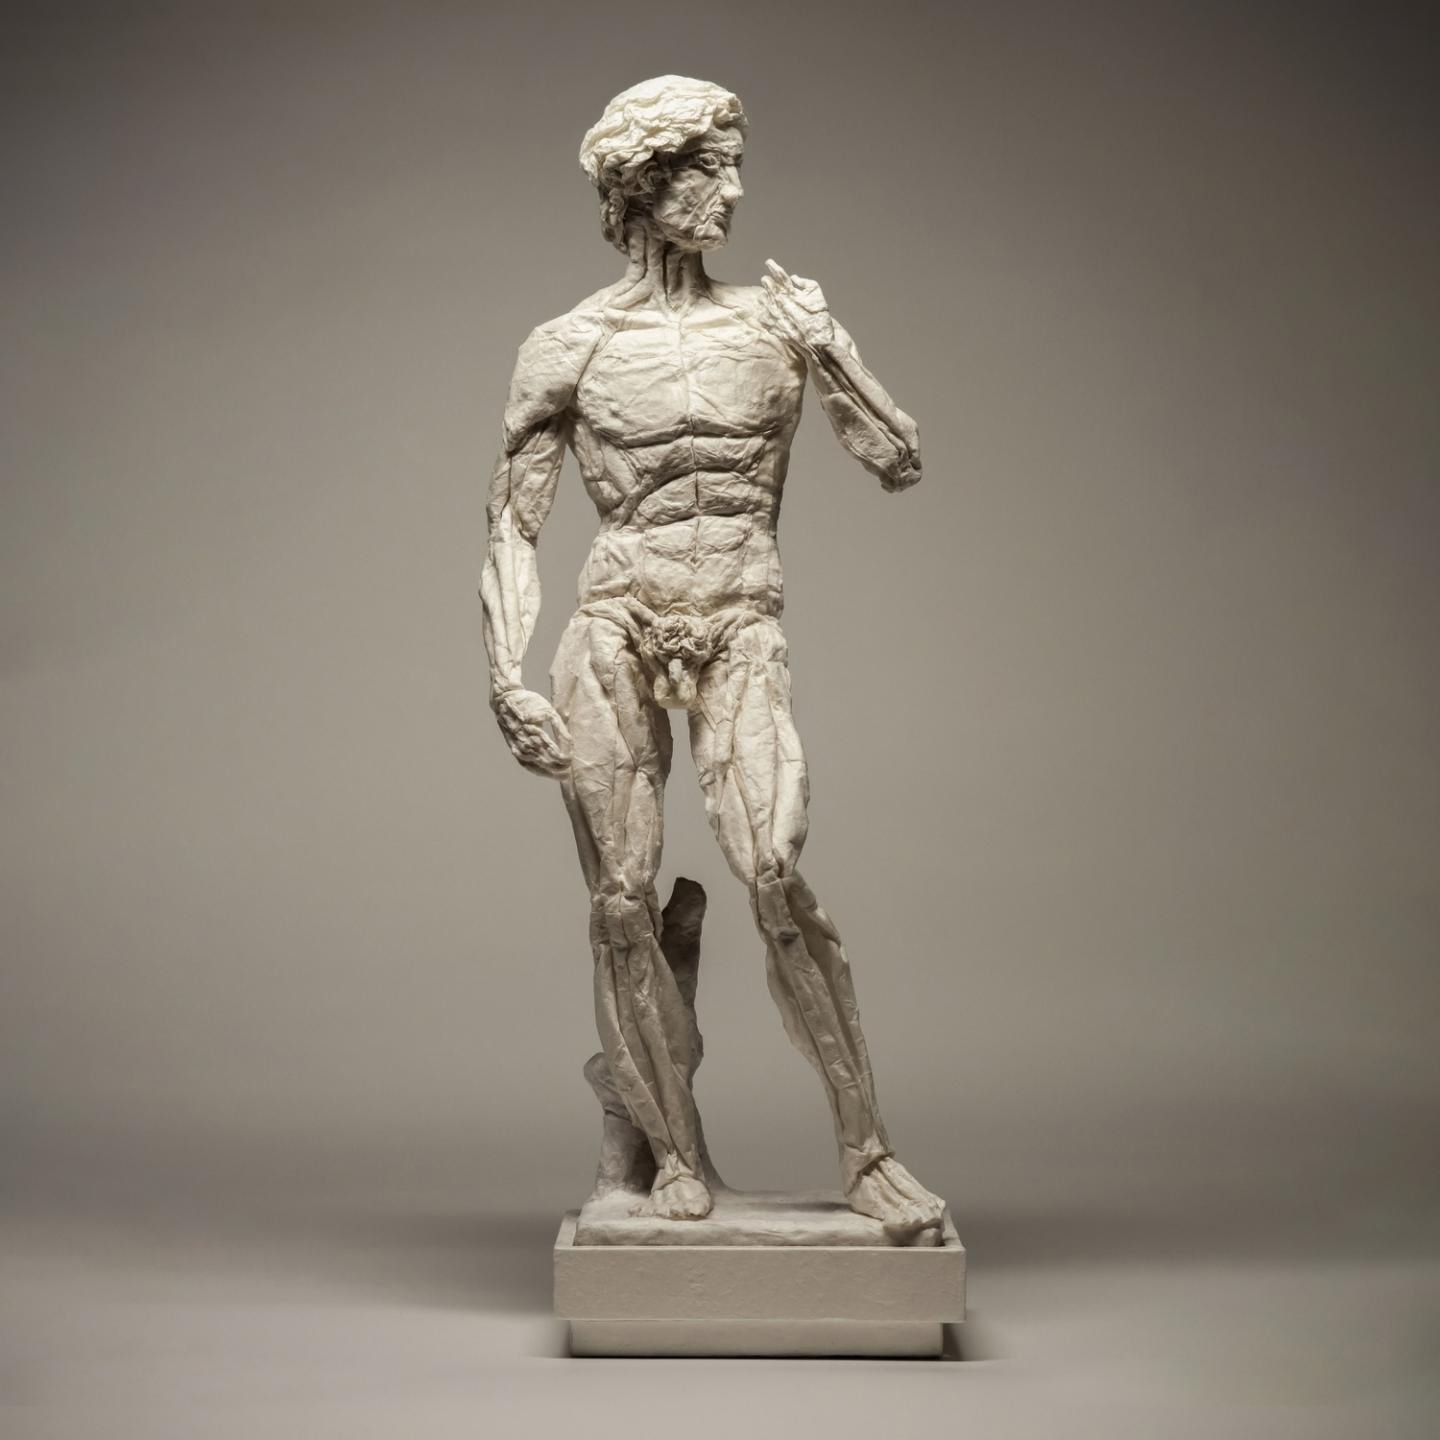 Эта модель основана на скульптурной моделе Бойса «Взгляд за пределы», вдохновленной одной из самых известных скульптур в мире «Давид» Микеланджело. «Давид» — это кульминация моих экспериментов по складыванию за последние два с половиной года, на которые сильно повлиял художественный подход Эрика Джойзеля